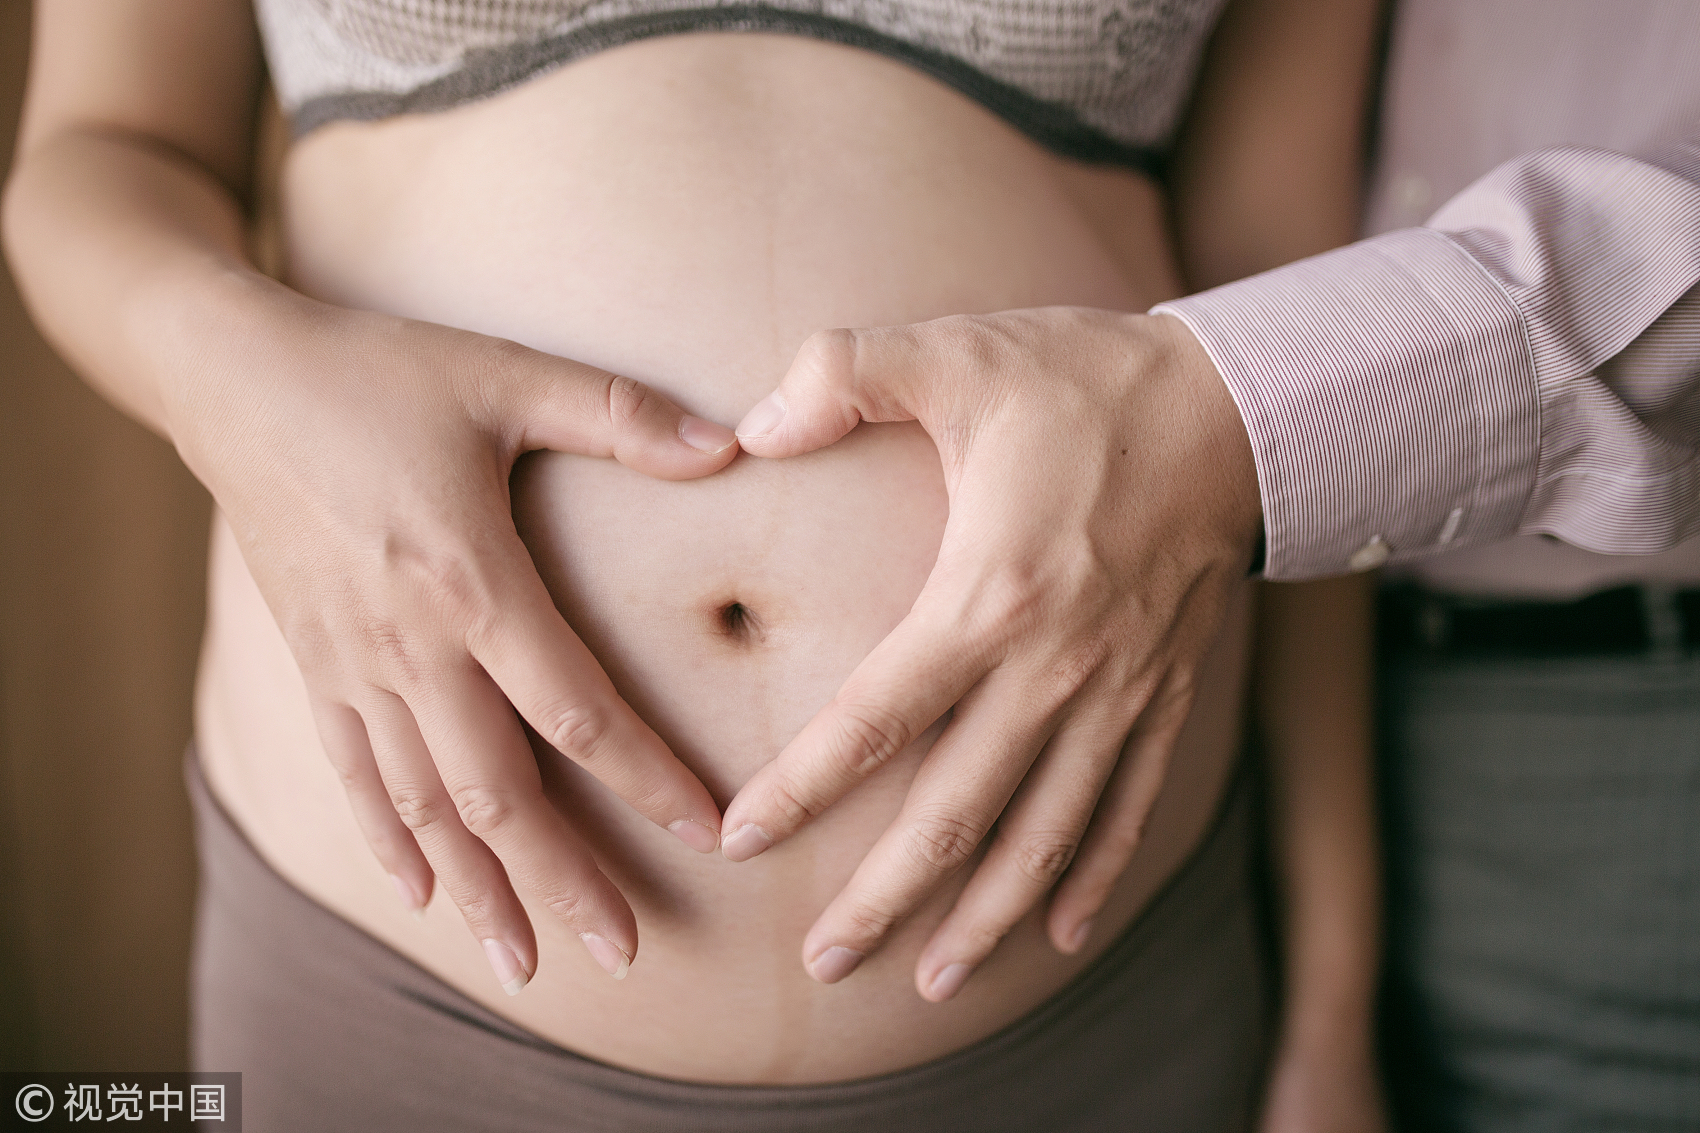 抚摸肚皮进行胎教有哪些优点？